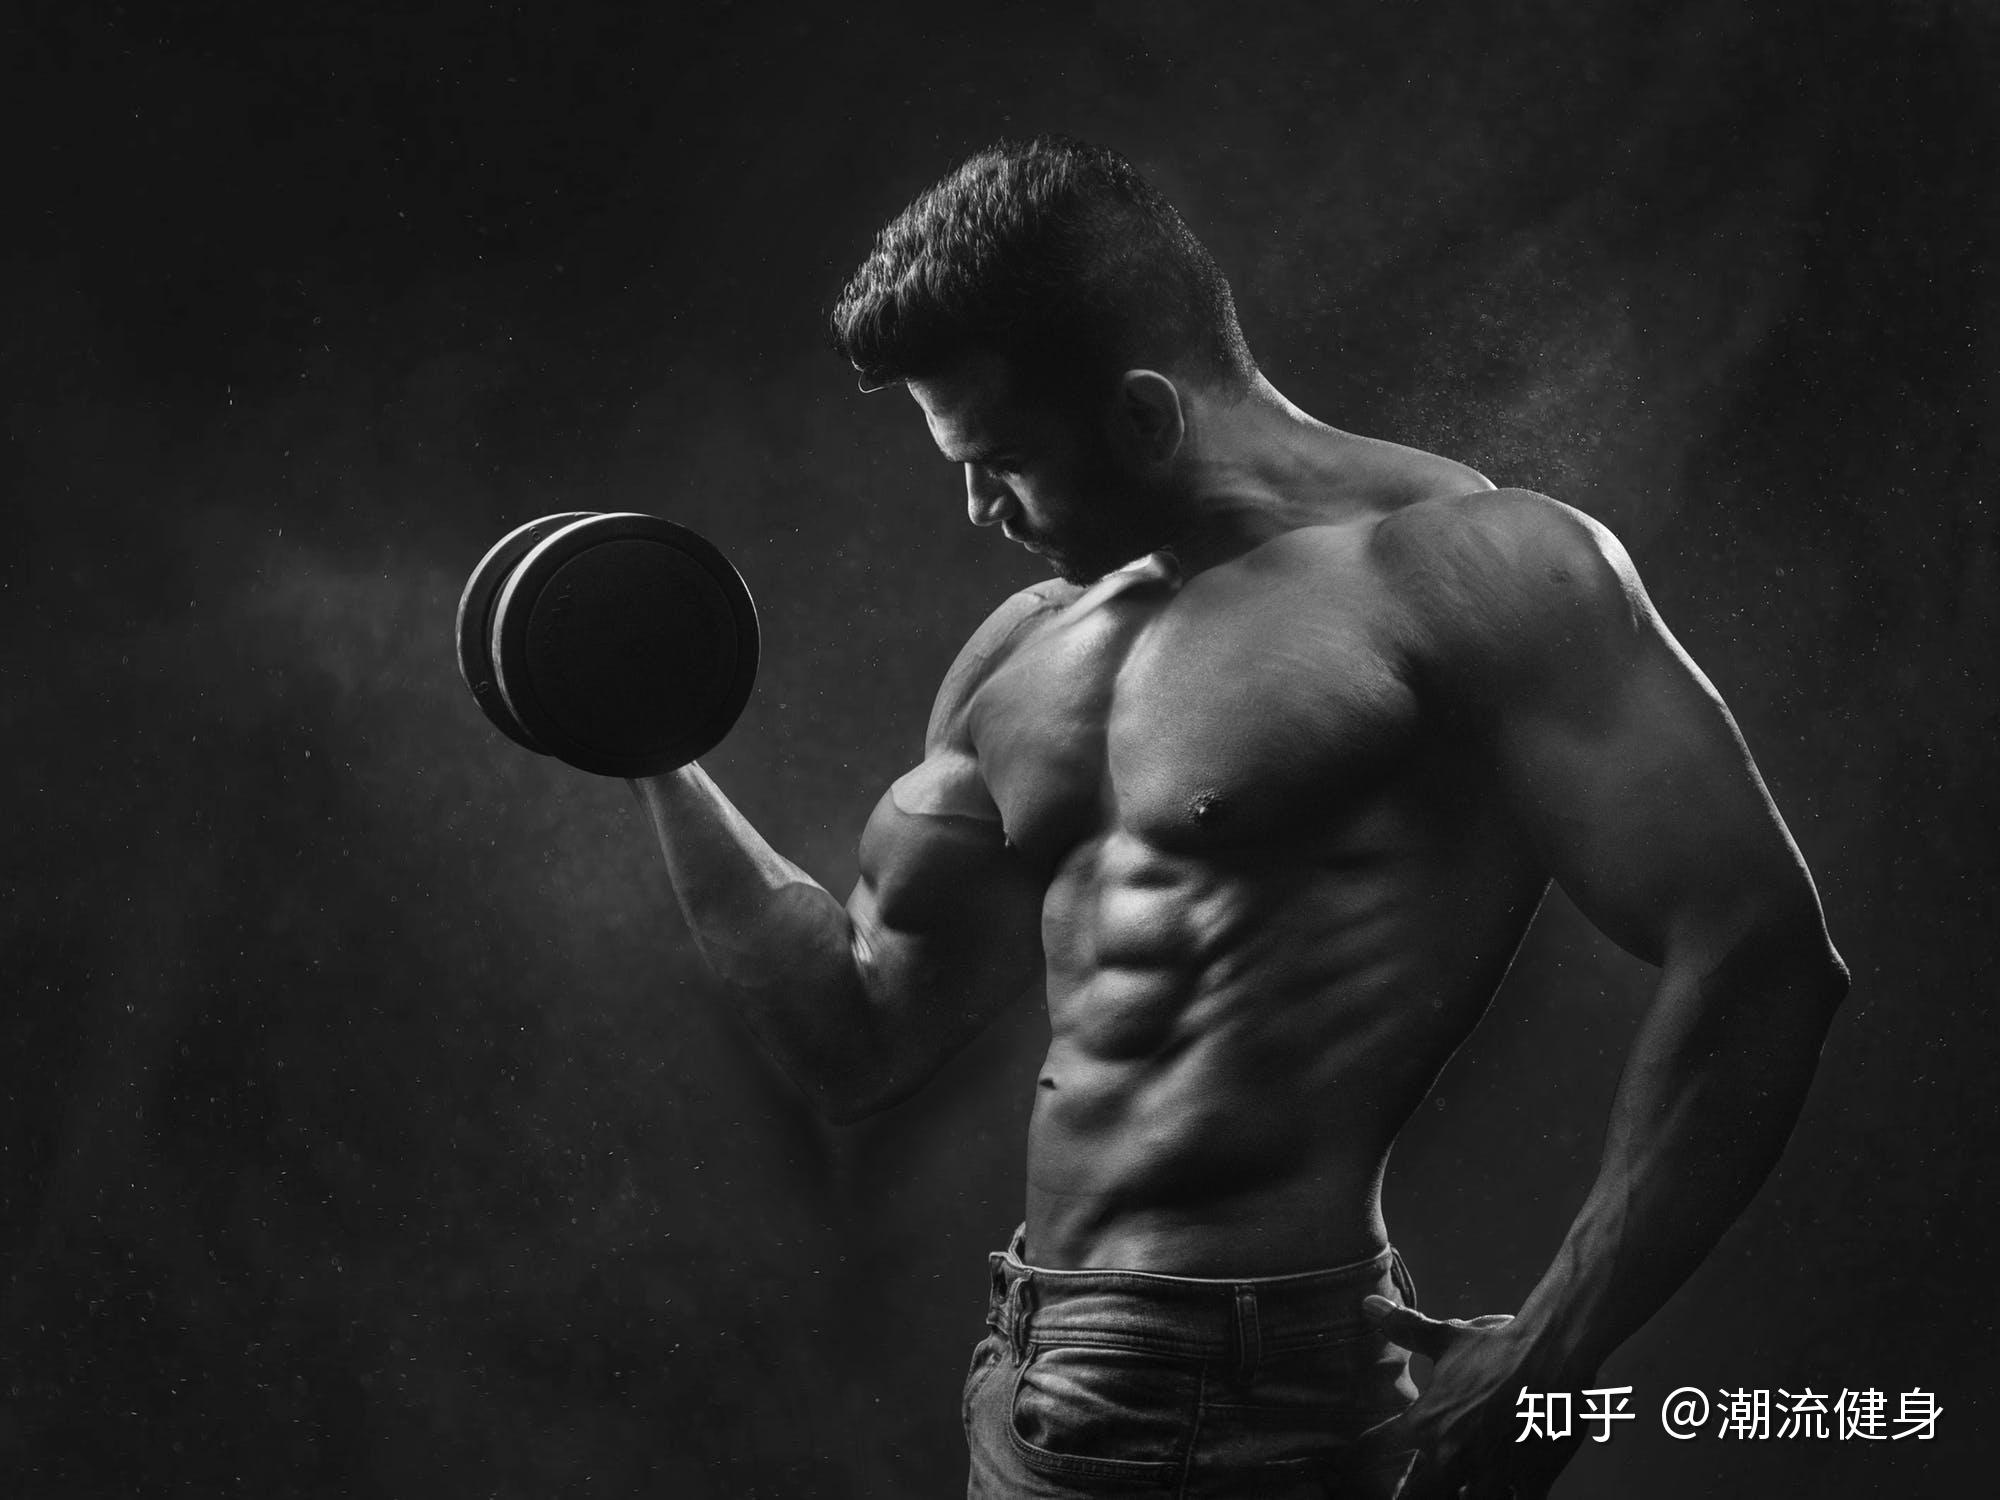 高大健壮肌肉帅哥体育生运动员 摄影师雷爷作品 | 男嗨之家